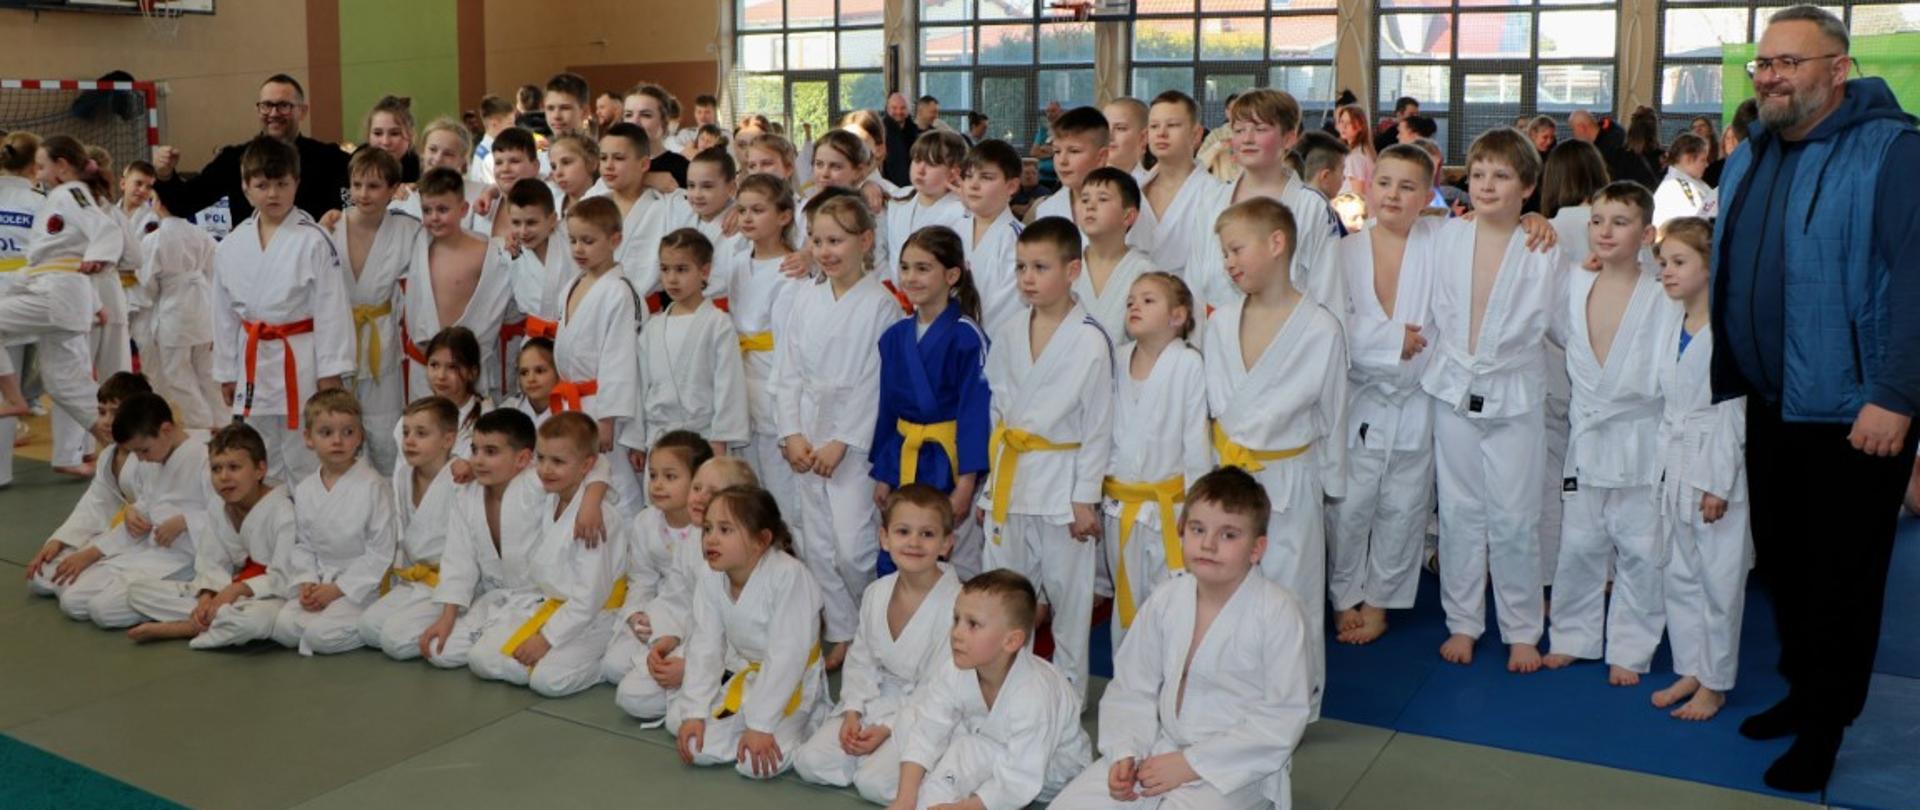 Na zdjęciu widać młodzież na turnieju Judo